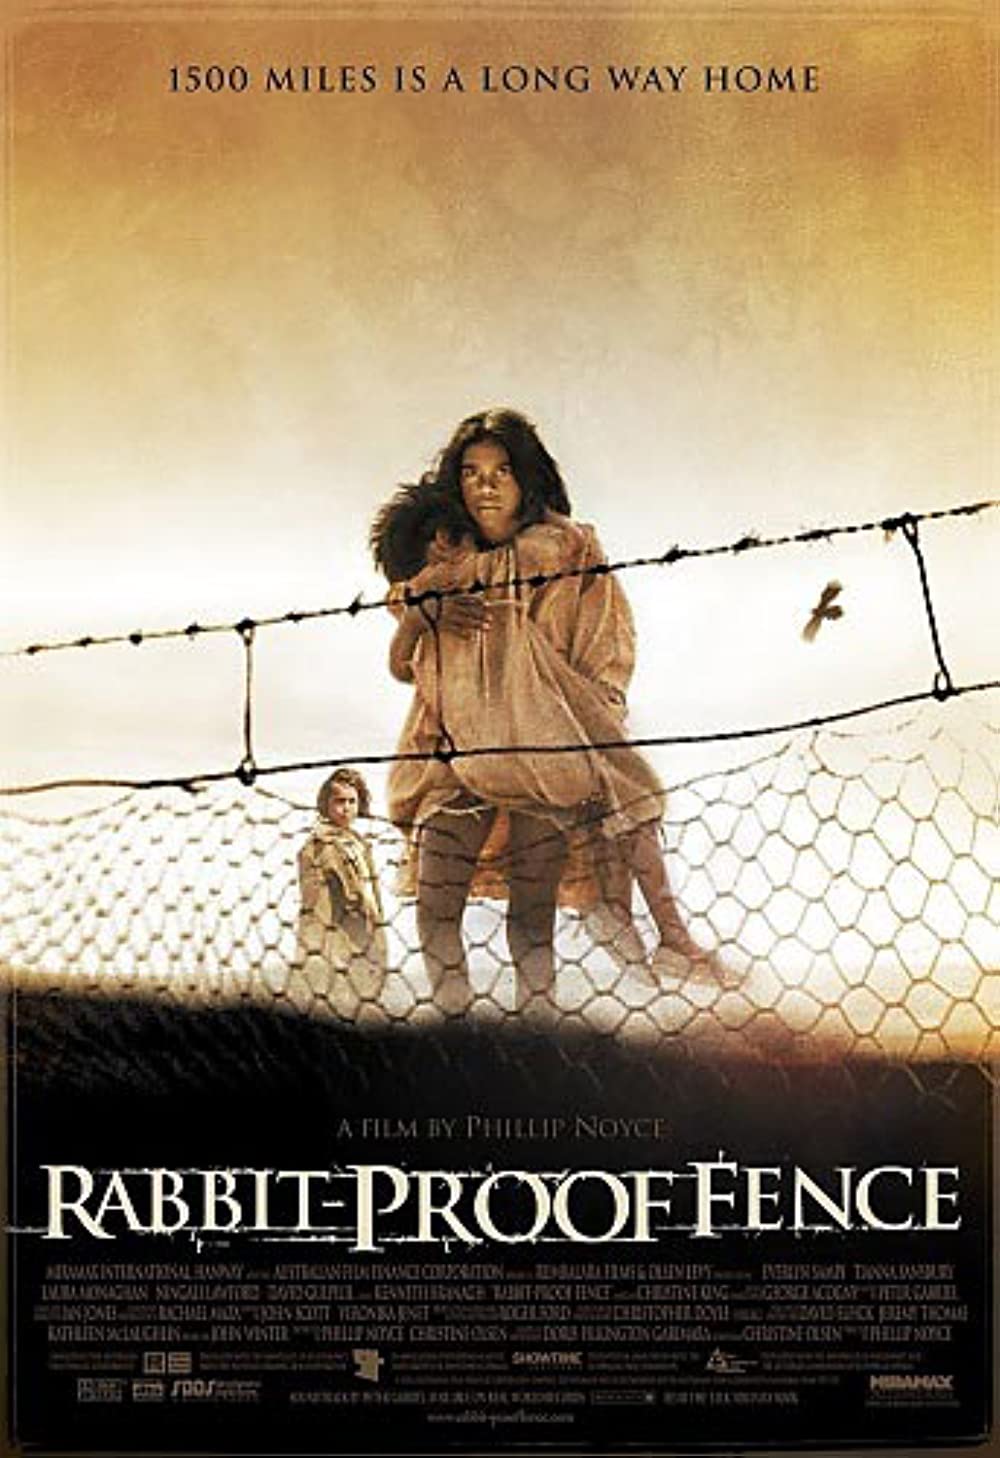 Filmbeschreibung zu Long Walk Home - Rabbit-Proof Fence